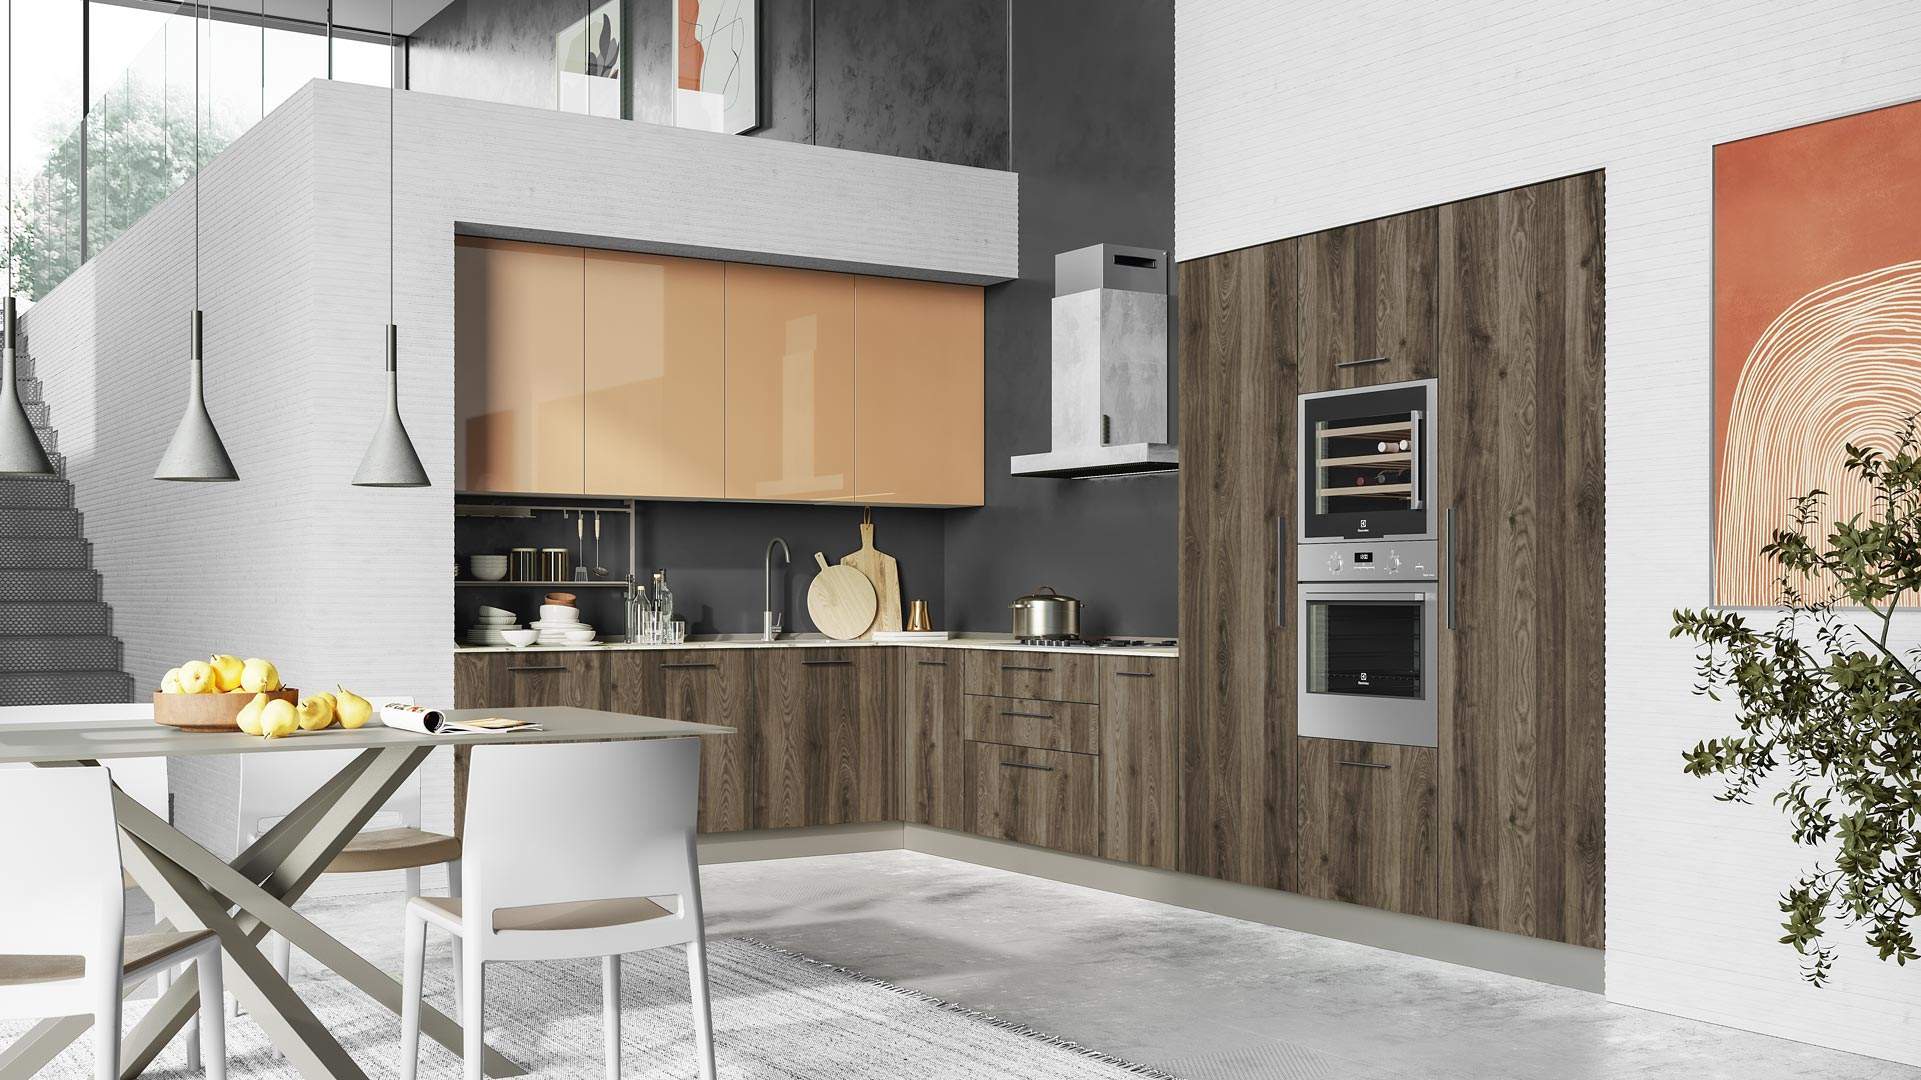 Creo Kitchens Tablet olasz konyhabútor tervezése, forgalmazása Magyarország, Szeged, Deco Interiors